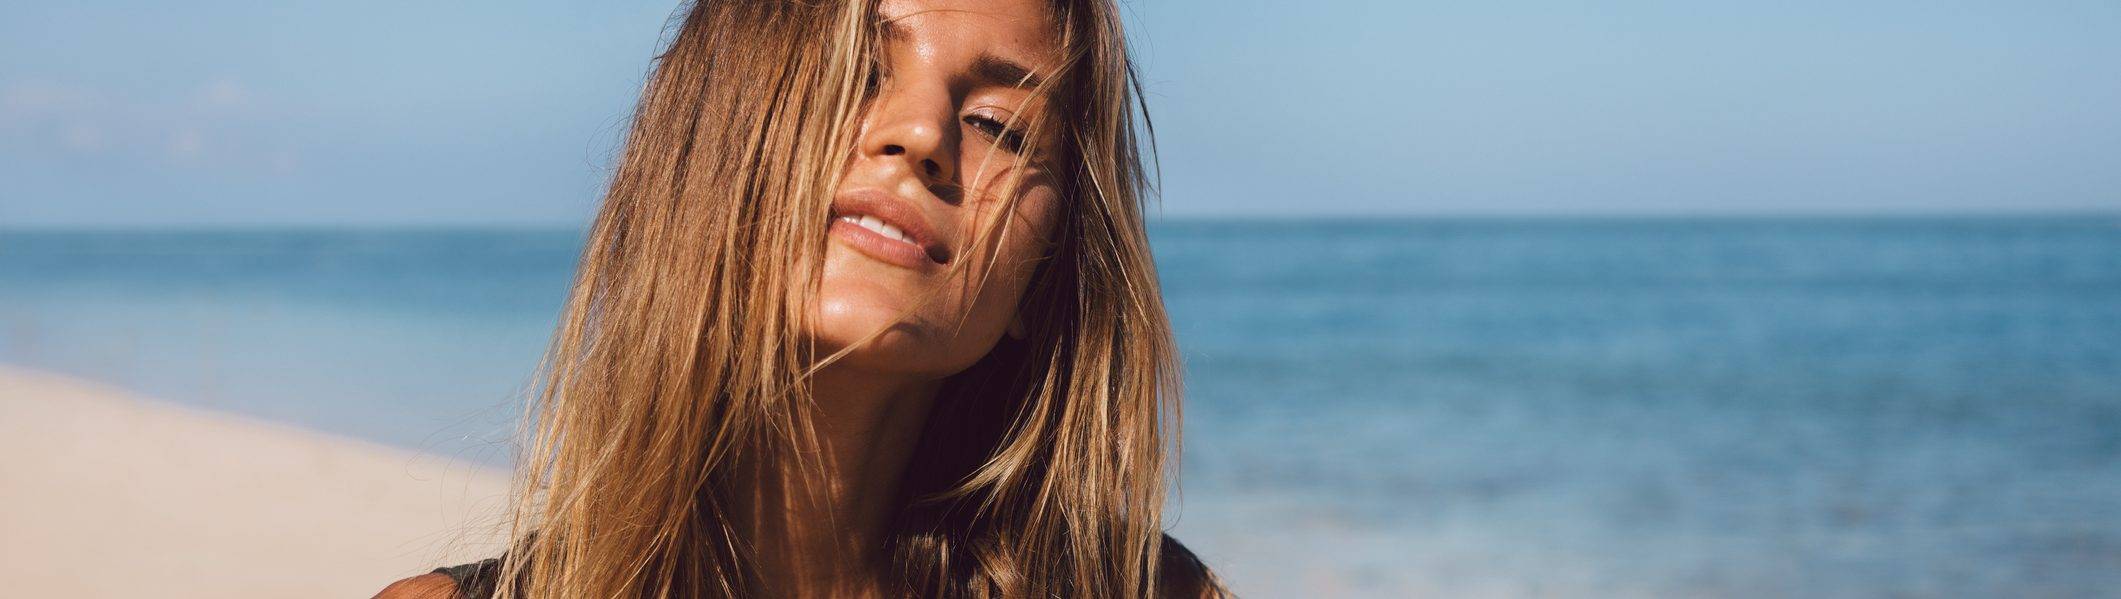 Cuidados com o cabelo no verão: mantenha seus fios saudáveis